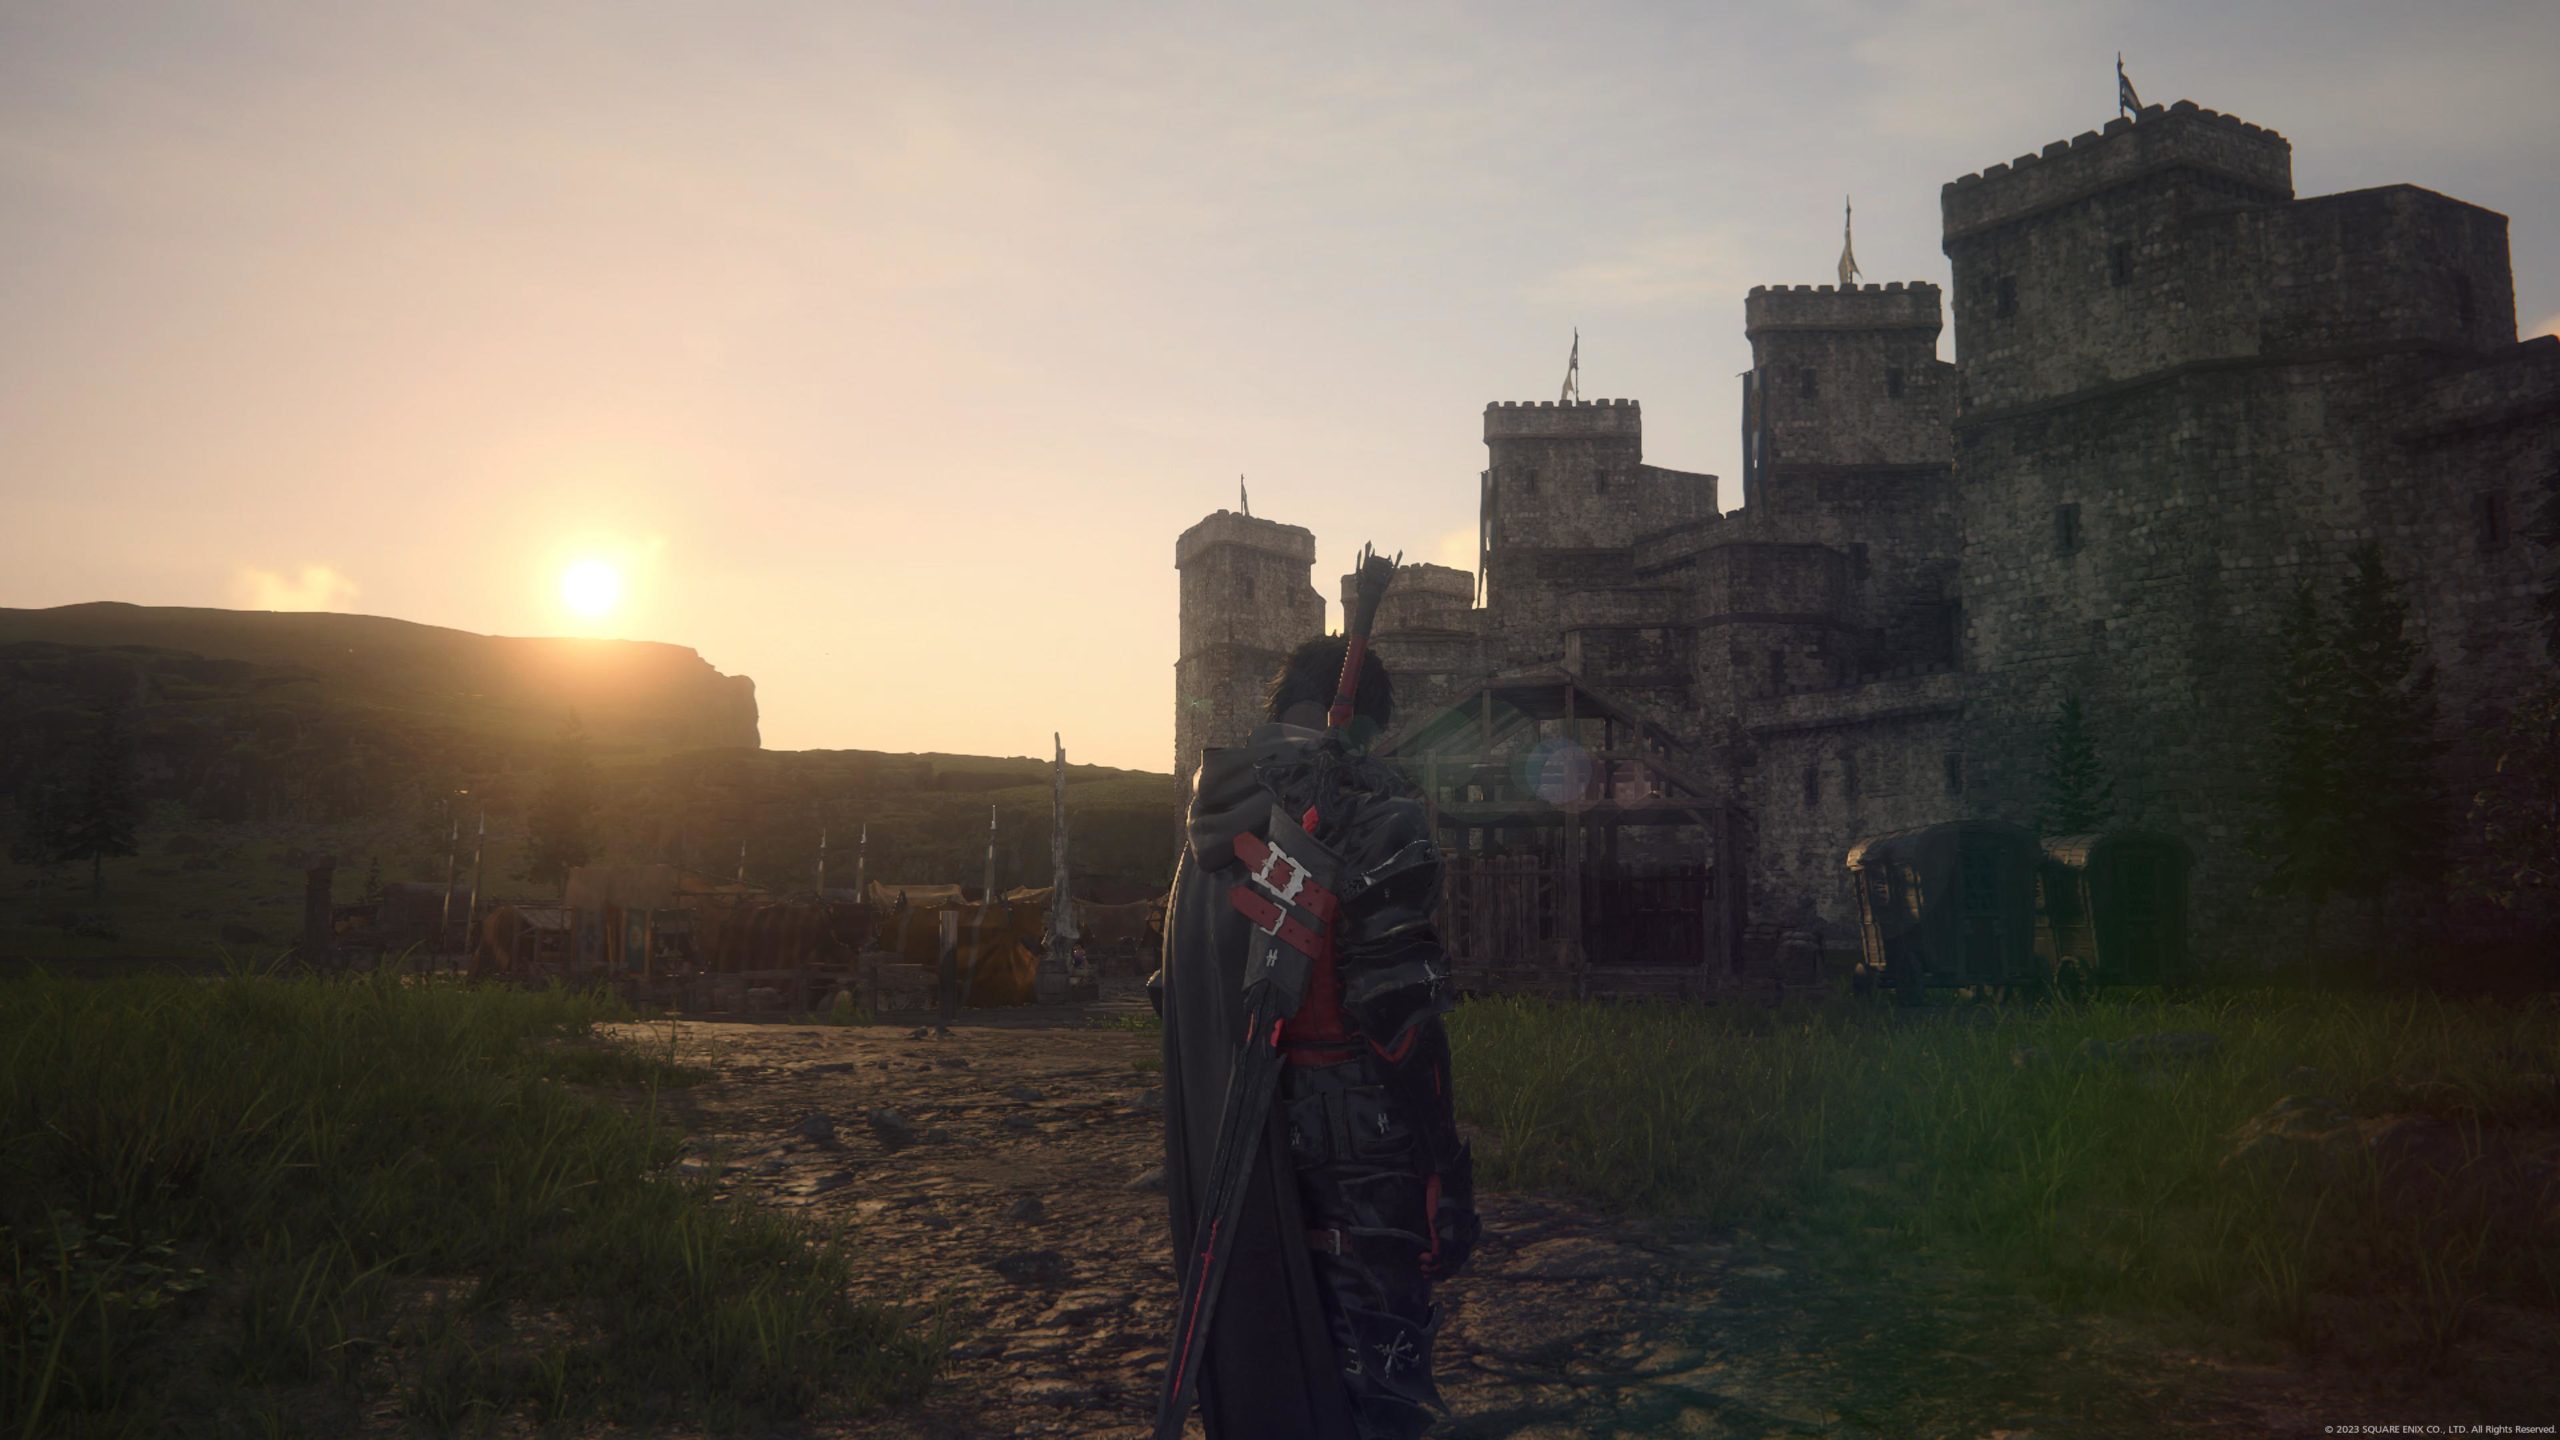 Un lever de soleil sur un château médiéval, quoi de plus romantique?